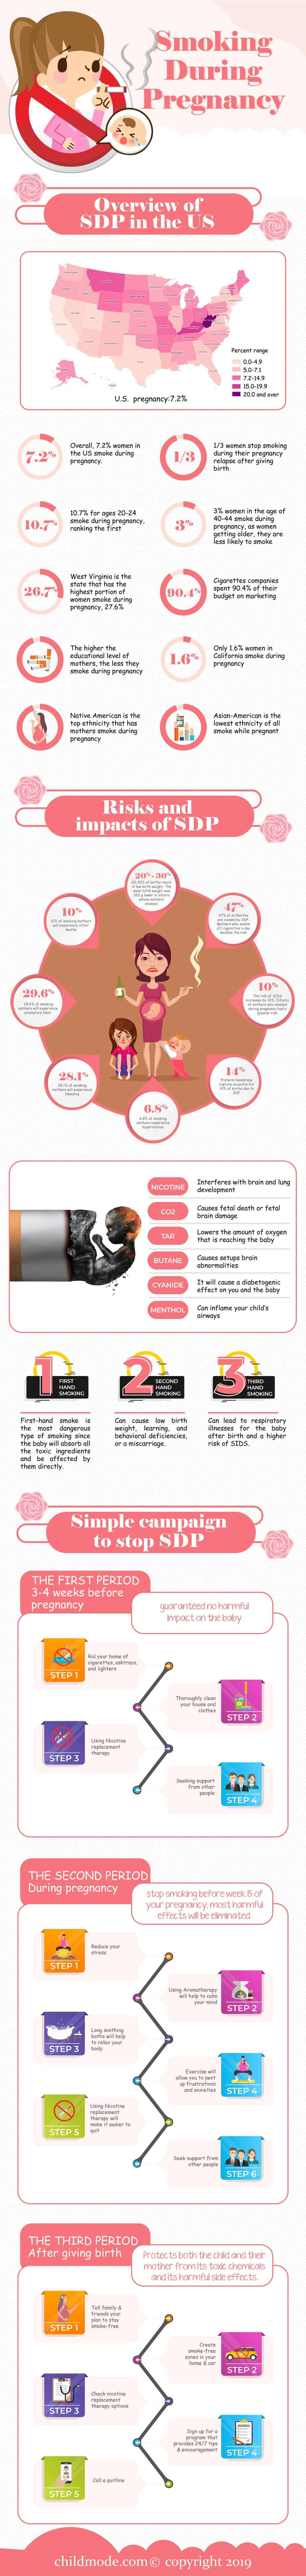 Smoke During Pregnancy